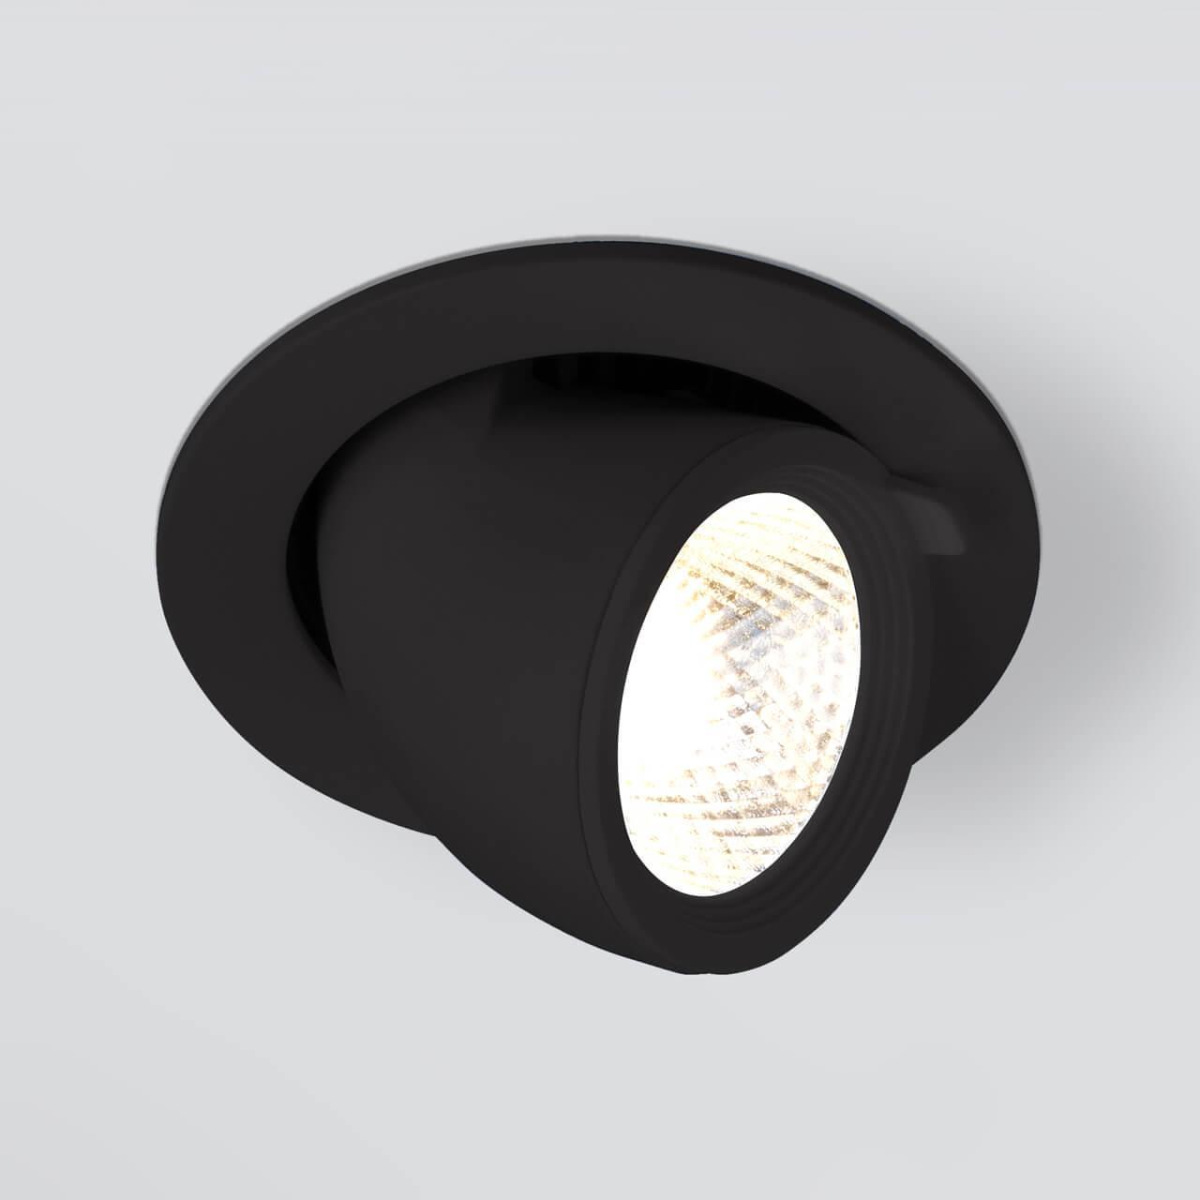 Встраиваемый светодиодный светильник Elektrostandard 9918 LED 9W 4200K черный 4690389162428 машинка для стрижки волос wahl groomsman rechargeable black 9918 1416